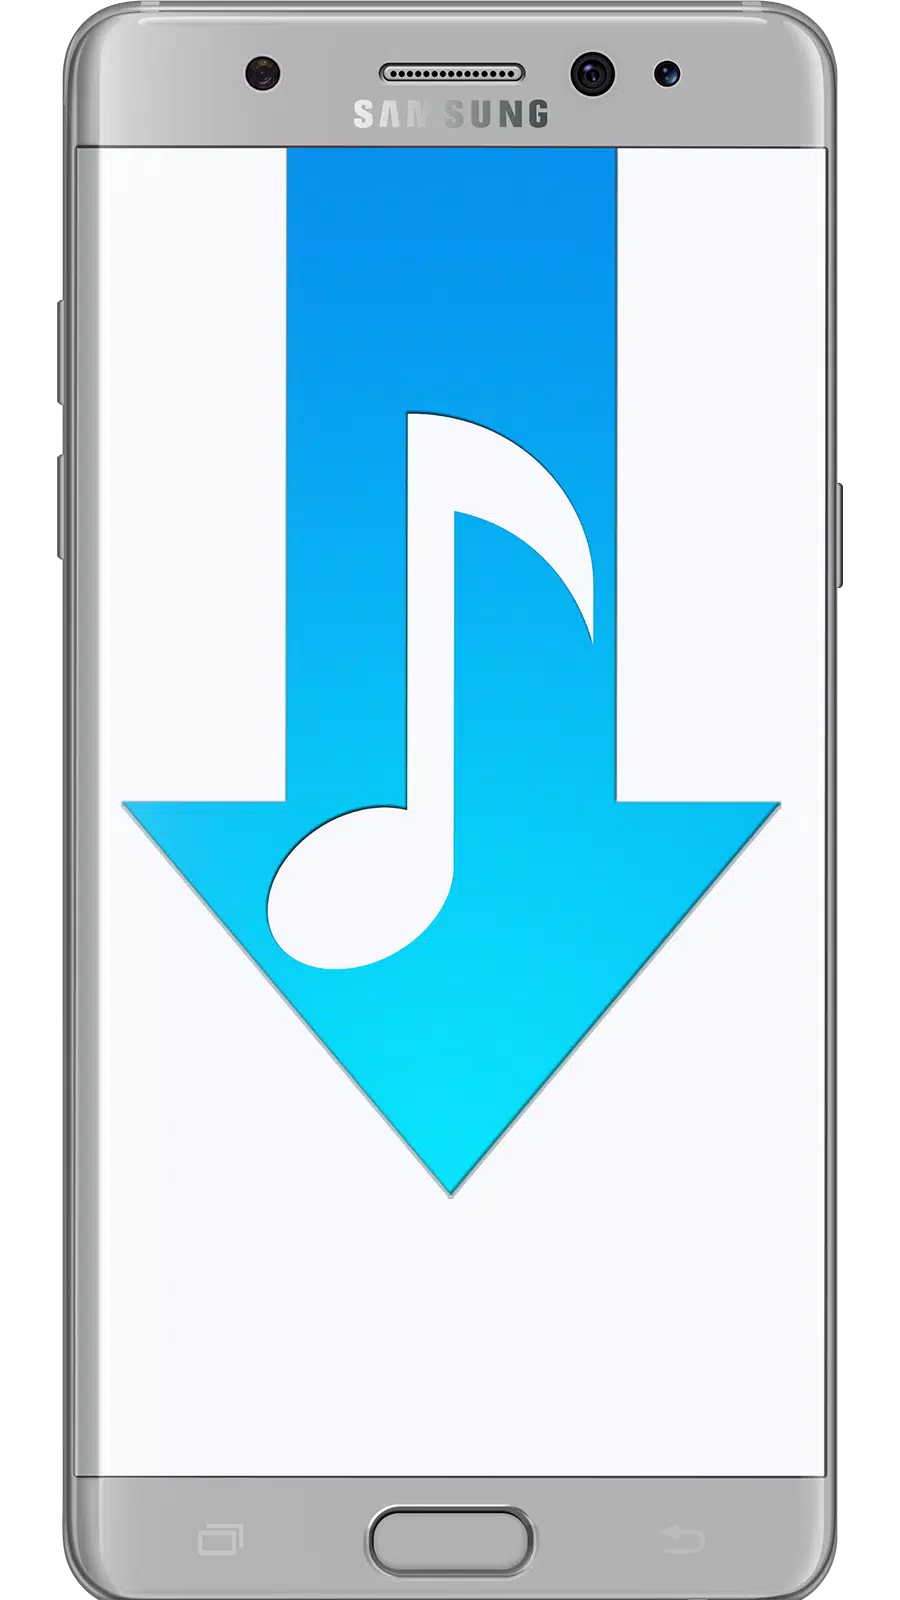 Bedava Müzik İndir | Klip MP3 İndir APK für Android herunterladen